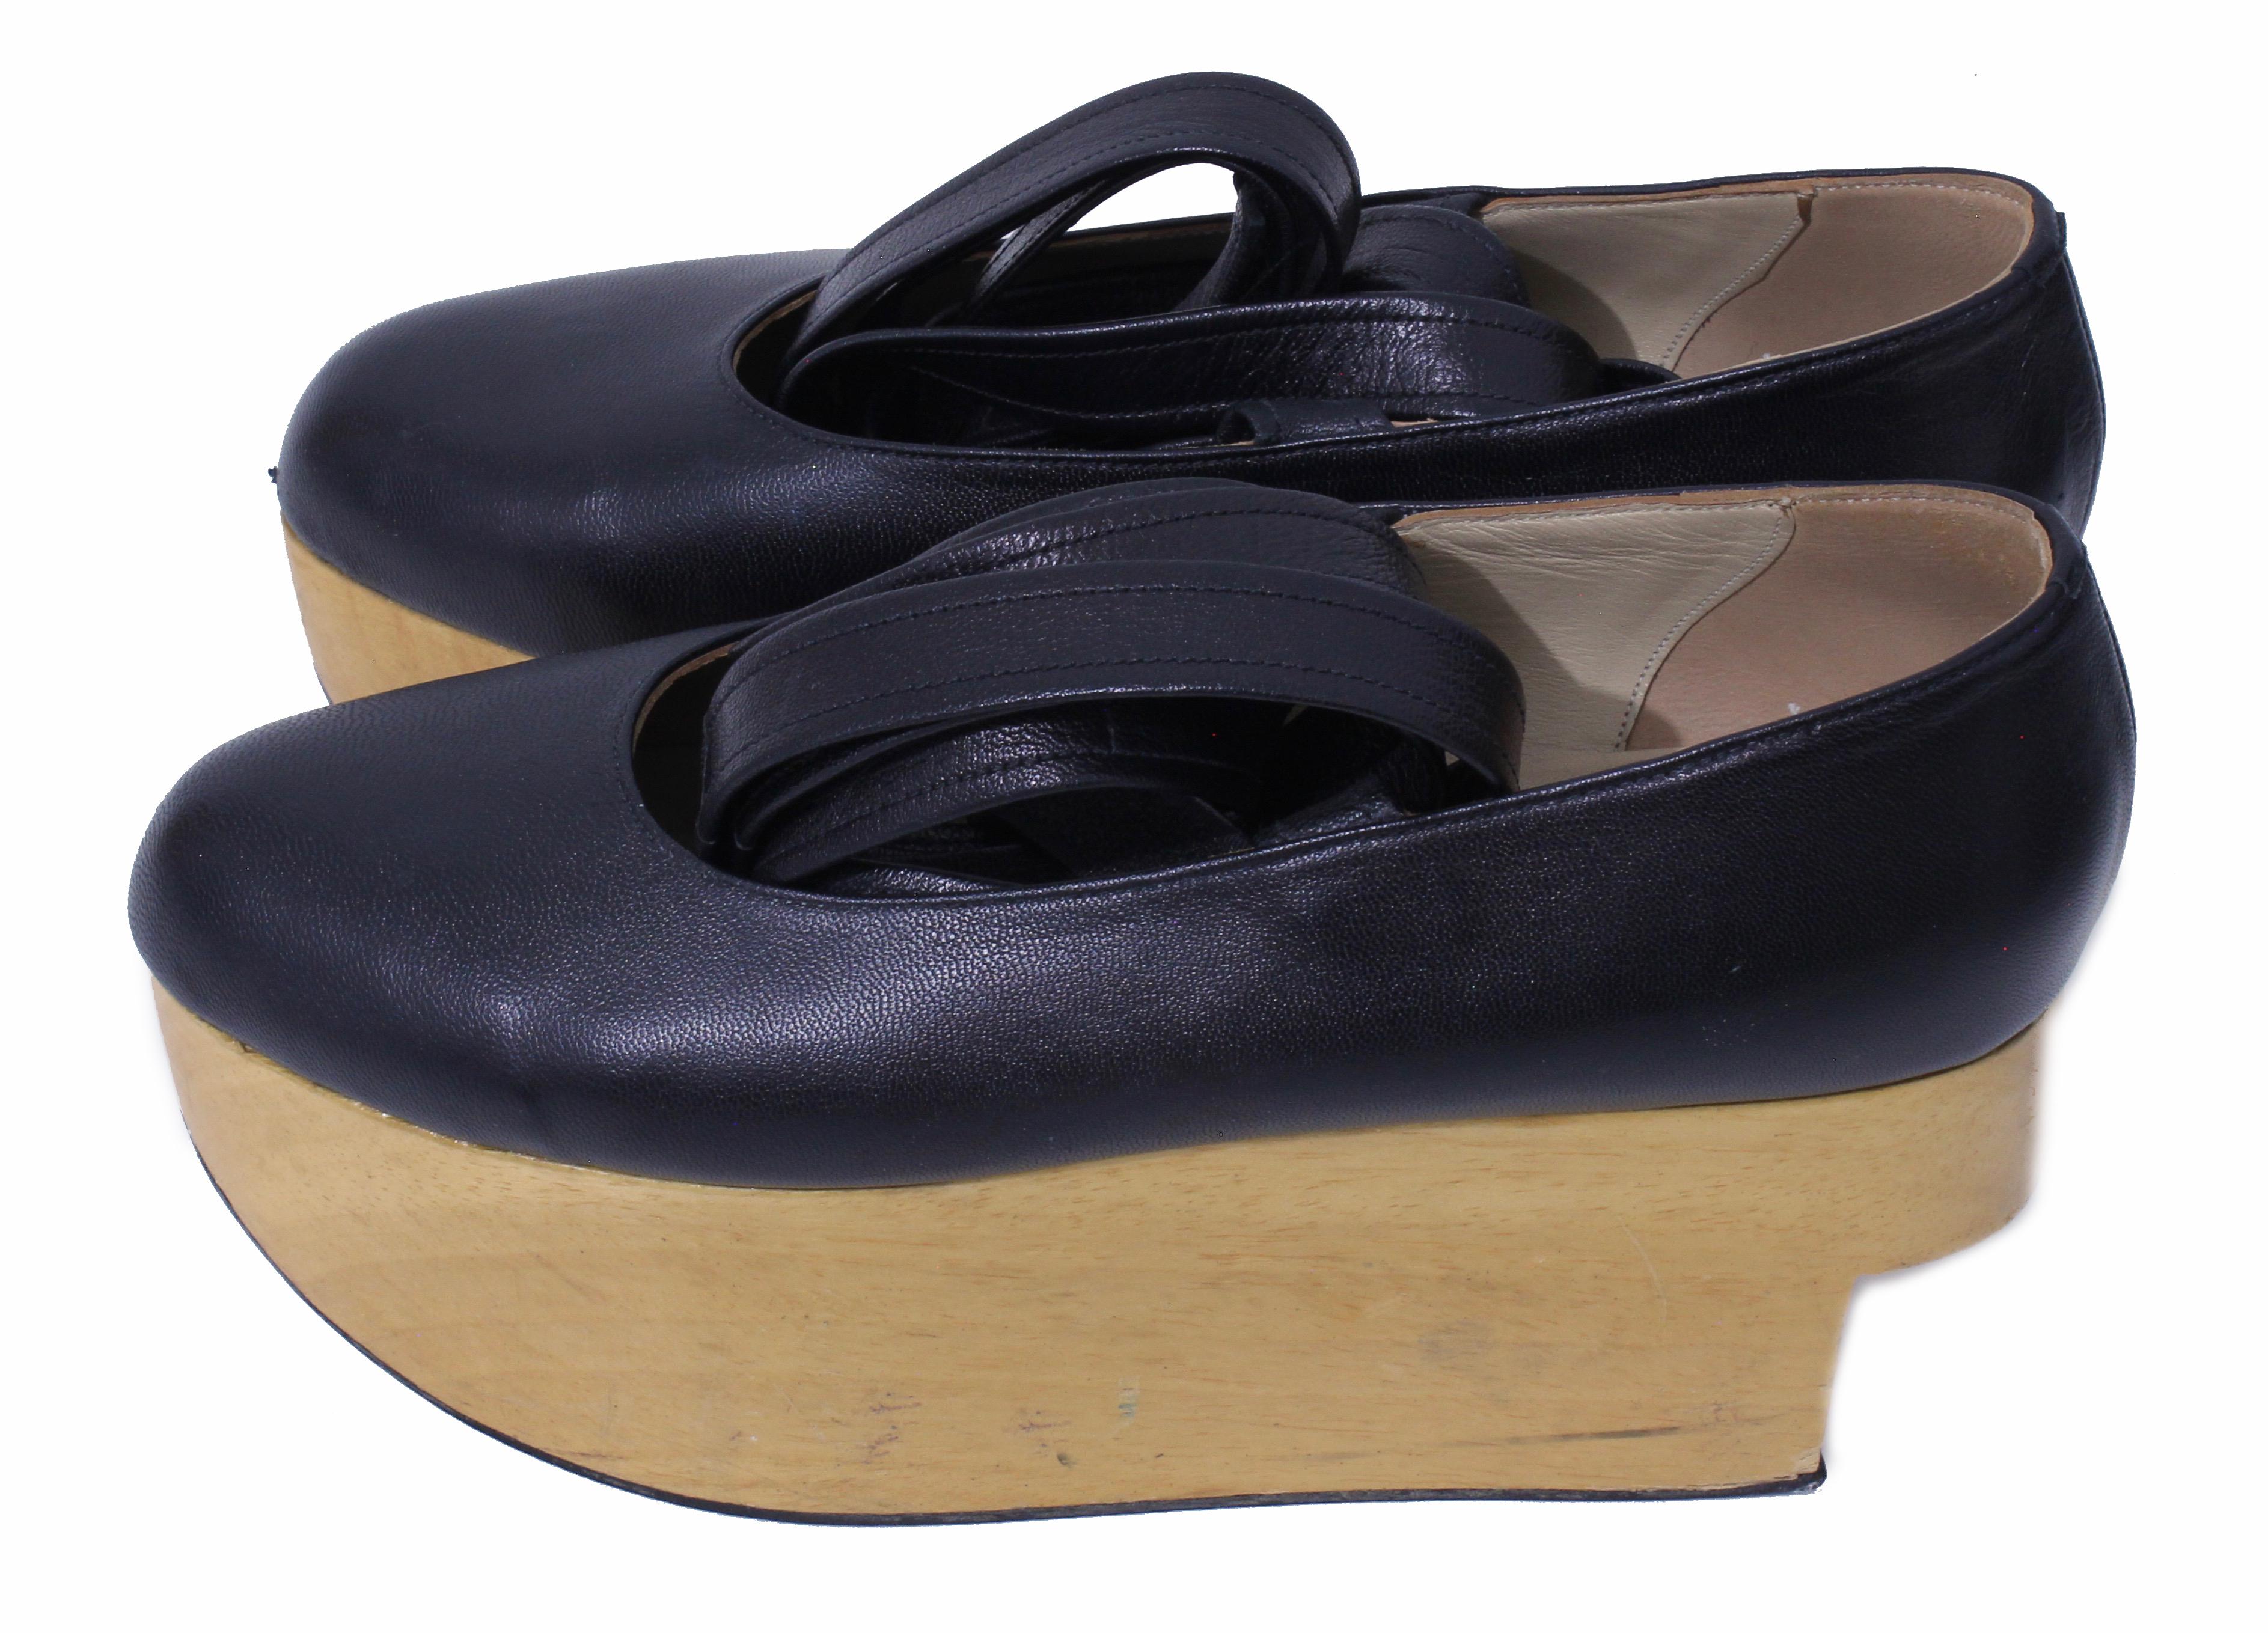 Women's or Men's Vivienne Westwood Rocking Horse Shoes Black Leather Ballerina Platforms US6 UK5